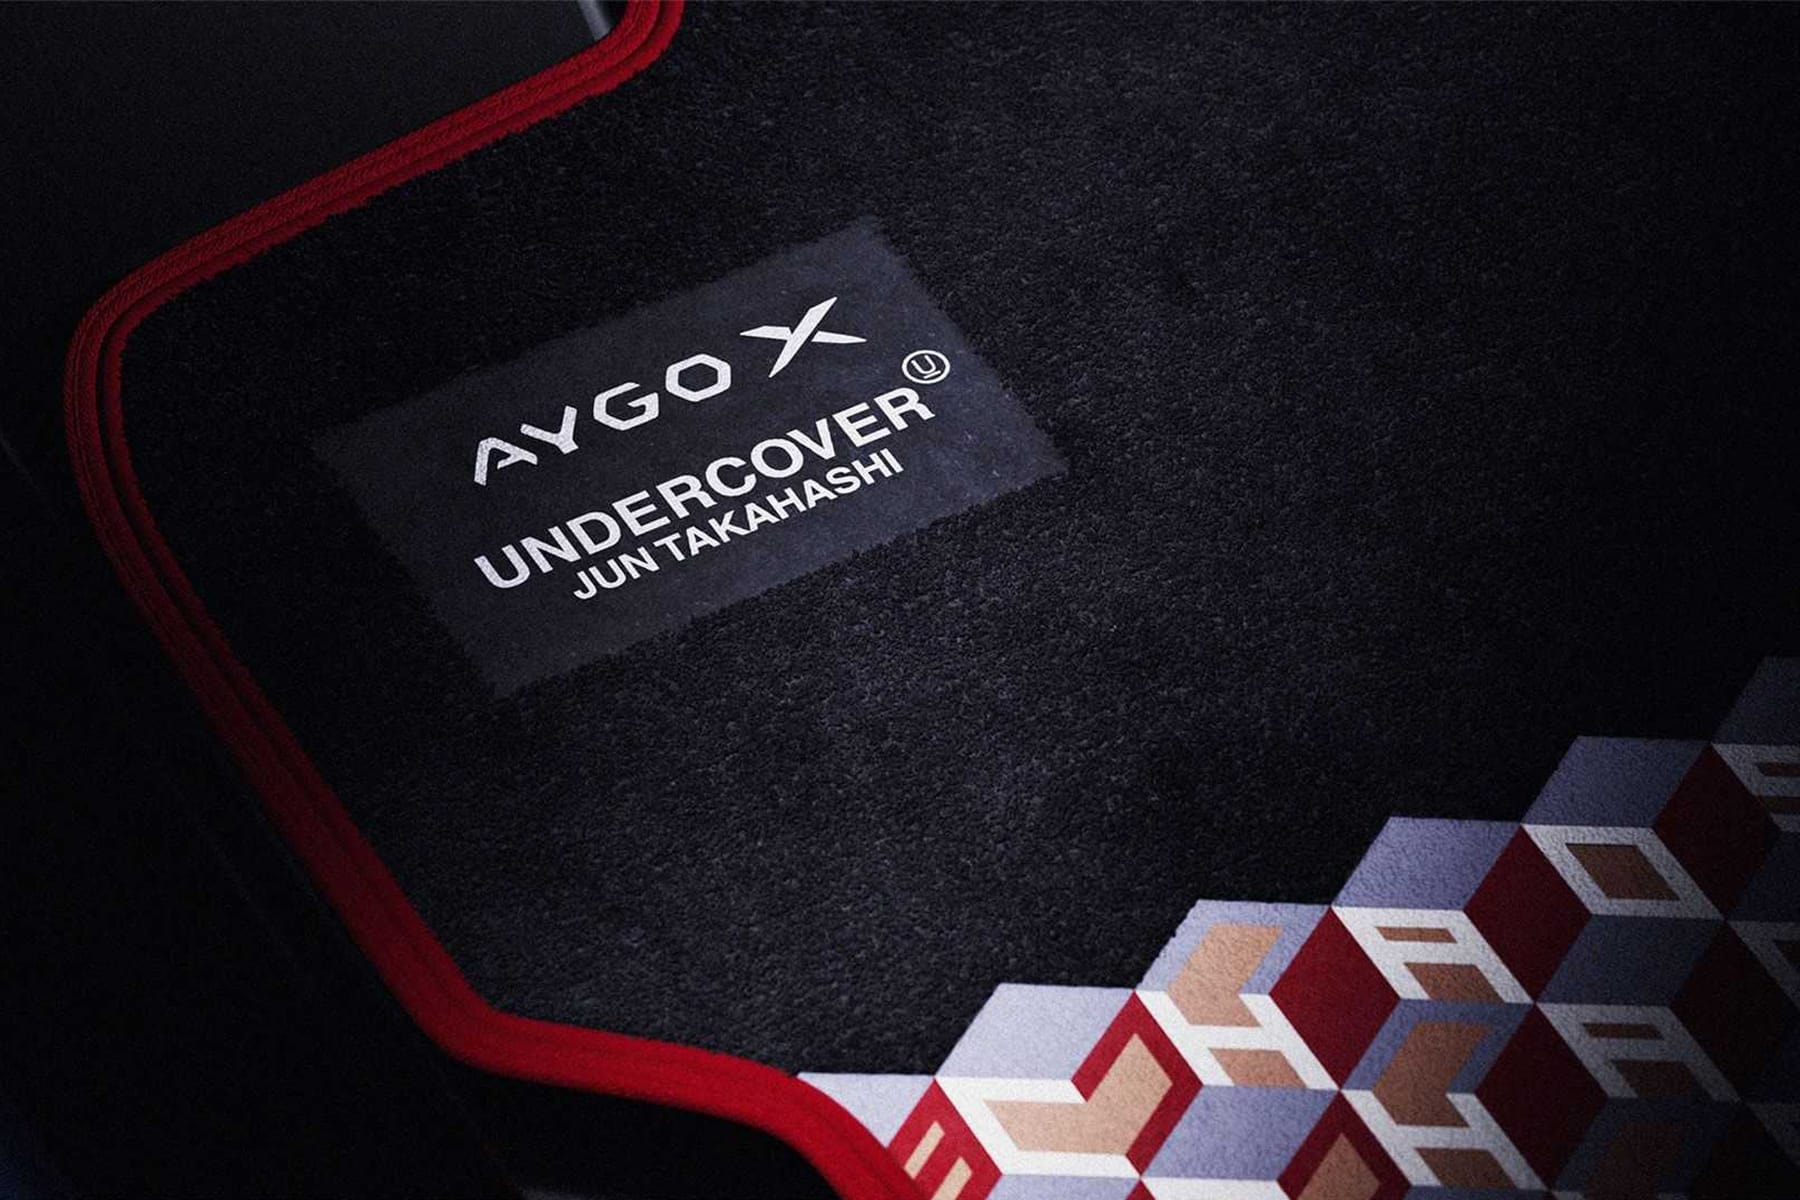 Toyota 携手 UNDERCOVER 打造全新 Aygo X 联名特别版车型